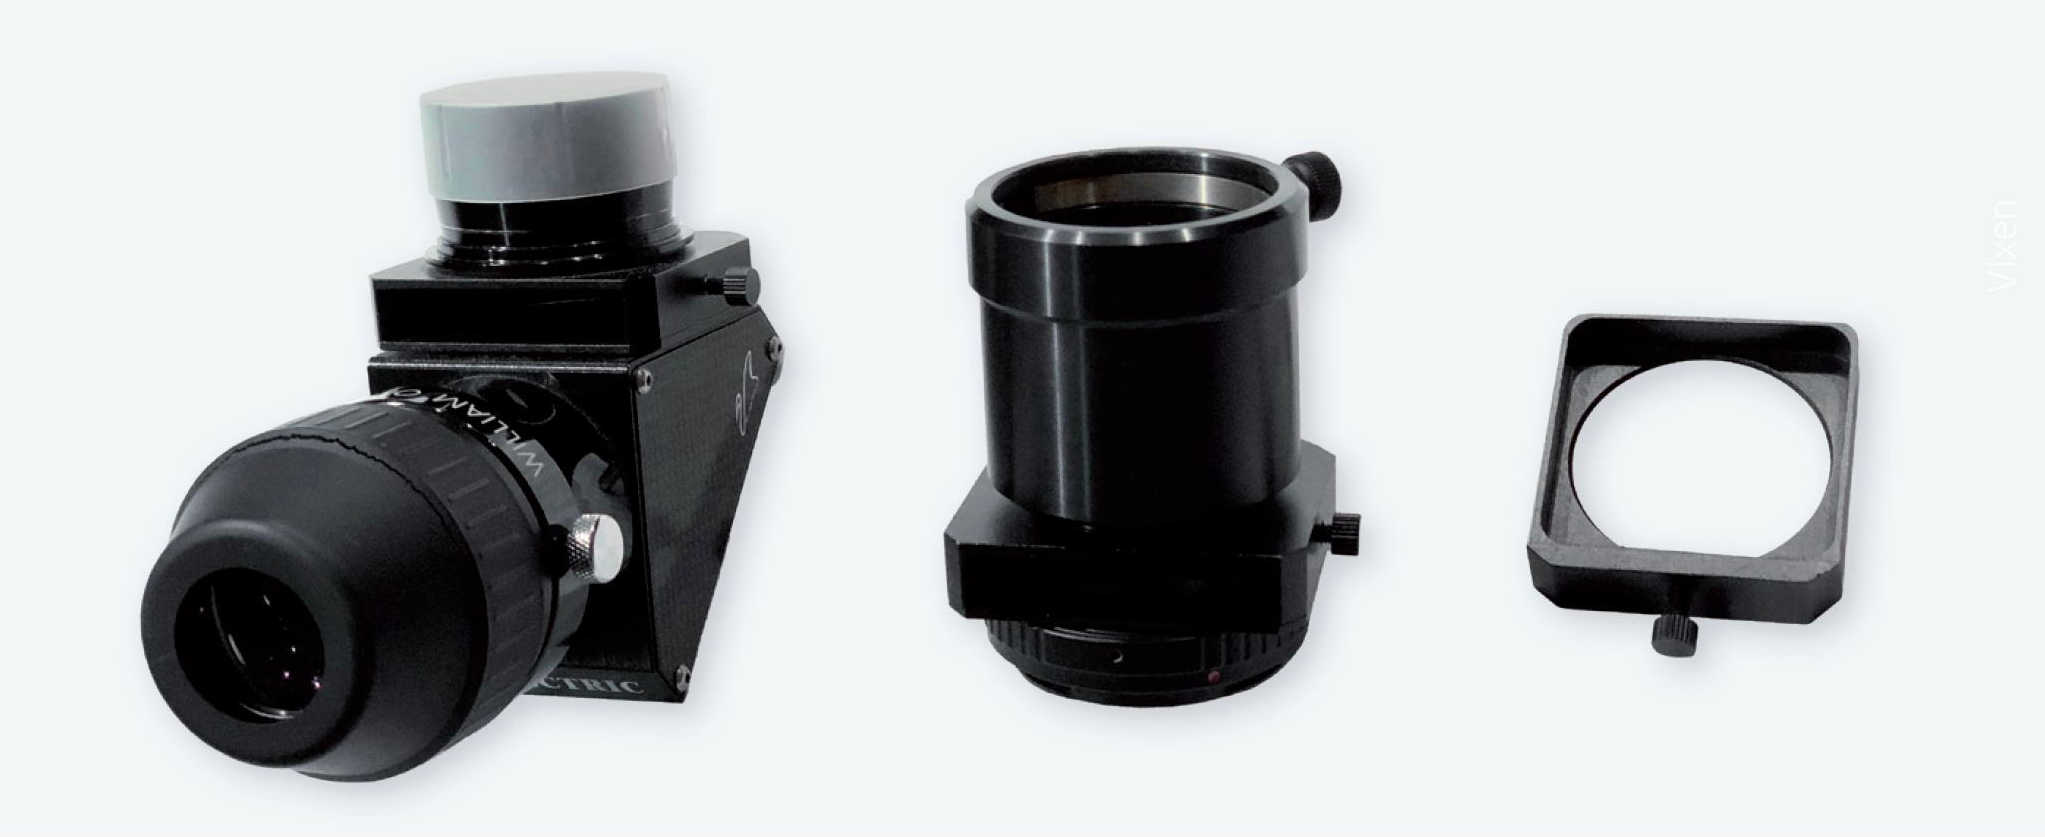 Filterschubladen verbaut an einem Zenit-Prisma und einem Canon EOS-Adapter
(die Rändelräder dienen zur Arretierung der Schublade) sowie eine eigentliche Filterschublade
(hier dient das Rändelrad als Schubladengriff). P. Oden